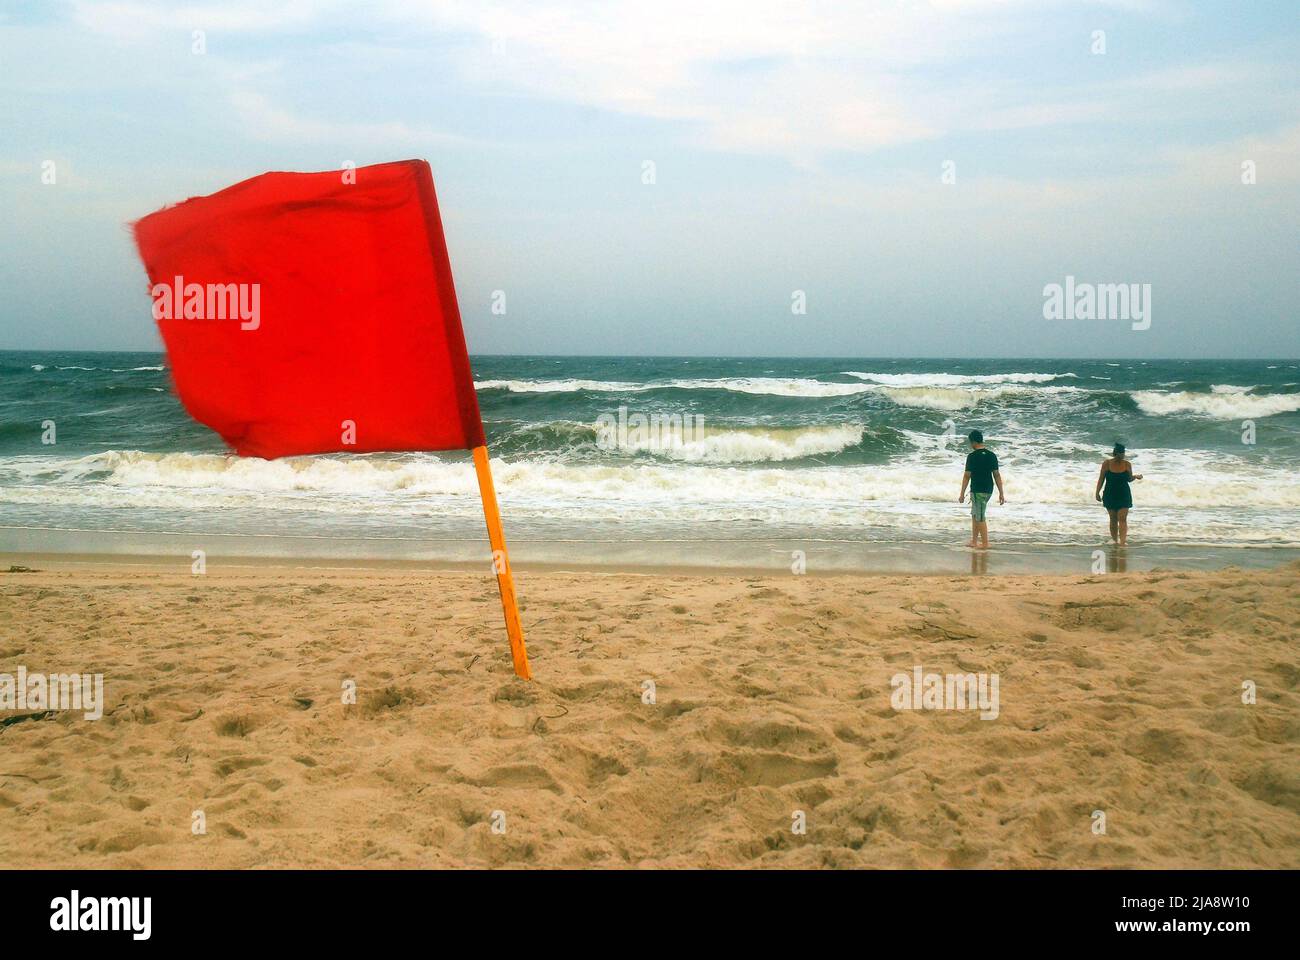 Zwei Menschen waten in der rauen Brandung des Ozeans, trotz der Warnung vor der roten Flagge am Robert Moses Beach auf Long Island Stockfoto